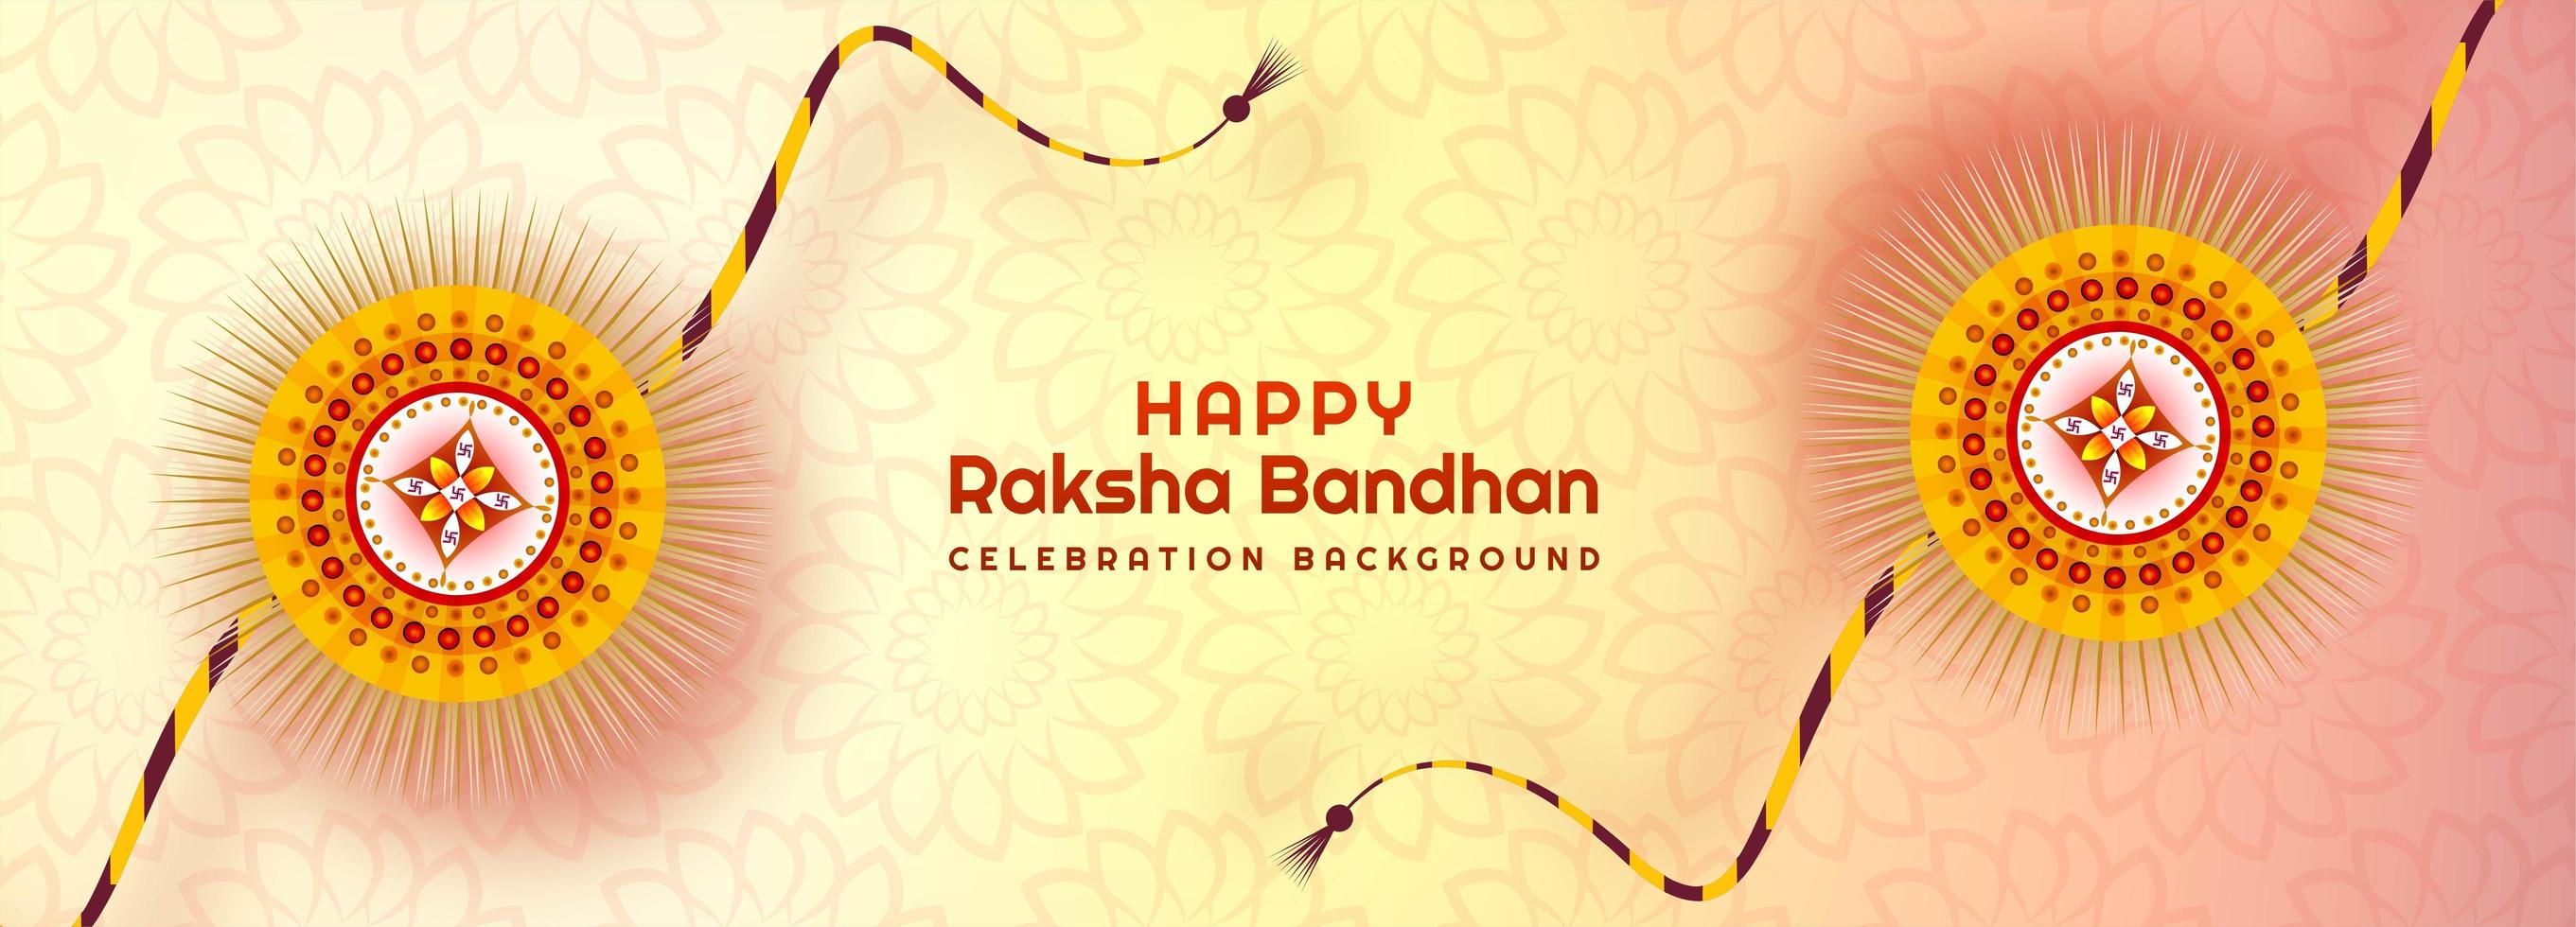 bannière rakhi ornementale pour raksha bandhan vecteur